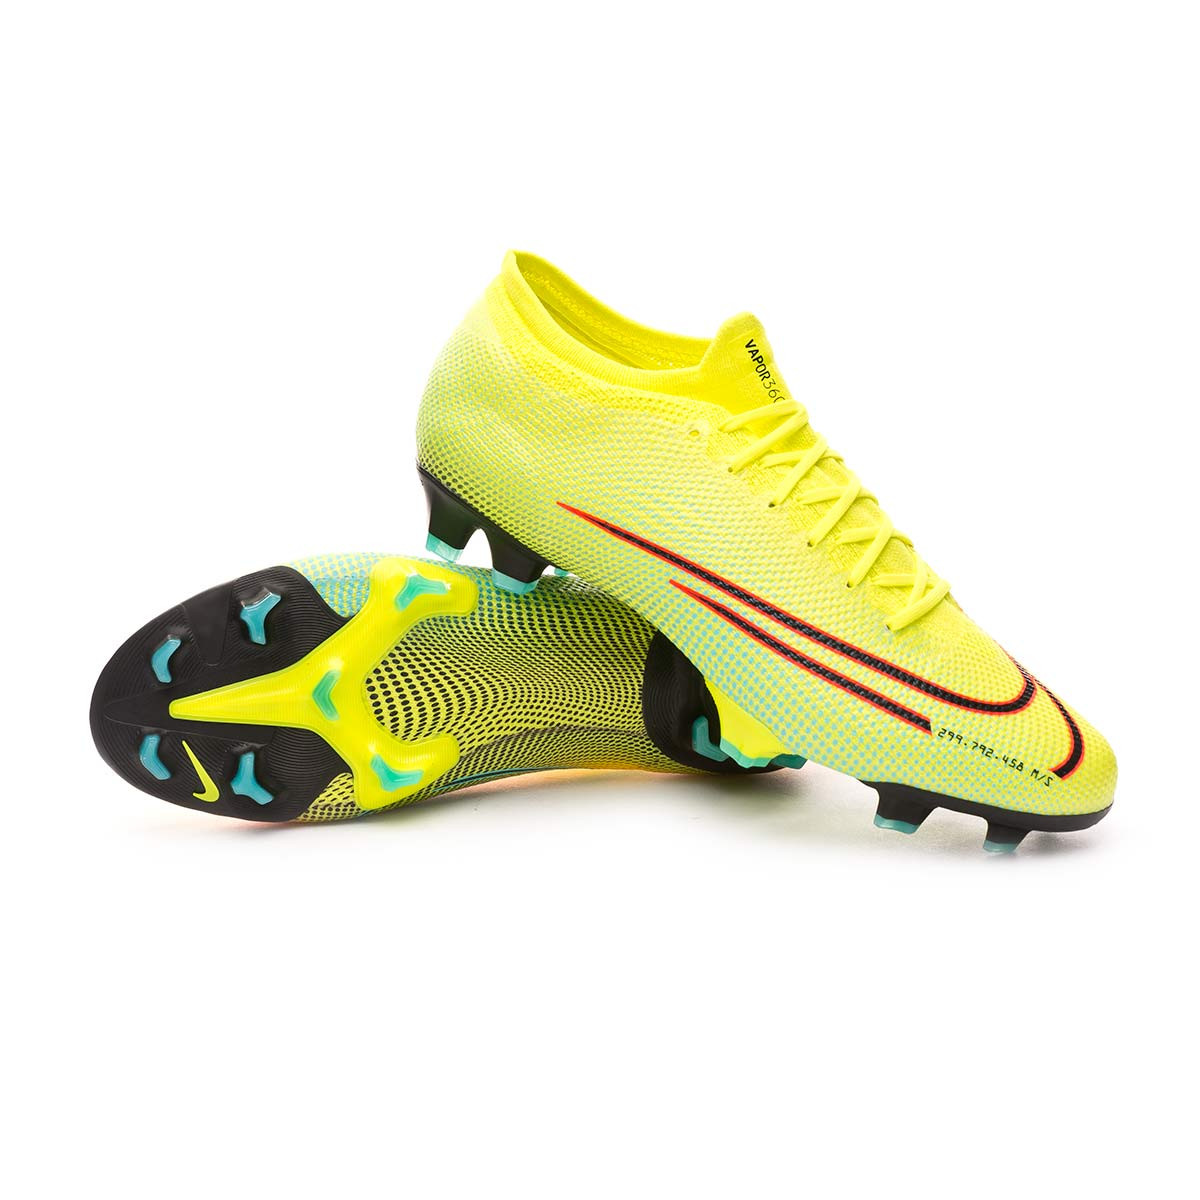 Bota de fútbol Nike Mercurial Vapor XIII Pro MDS 2 FG Lemon  venom-Black-Aurora green - Tienda de fútbol Fútbol Emotion